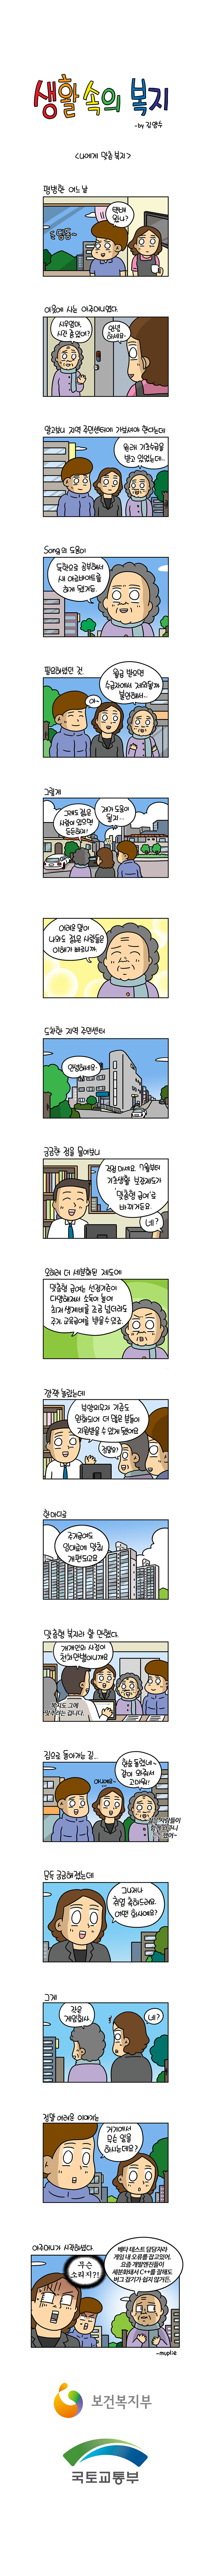 보건복지부 웹툰 (맞춤형급여)